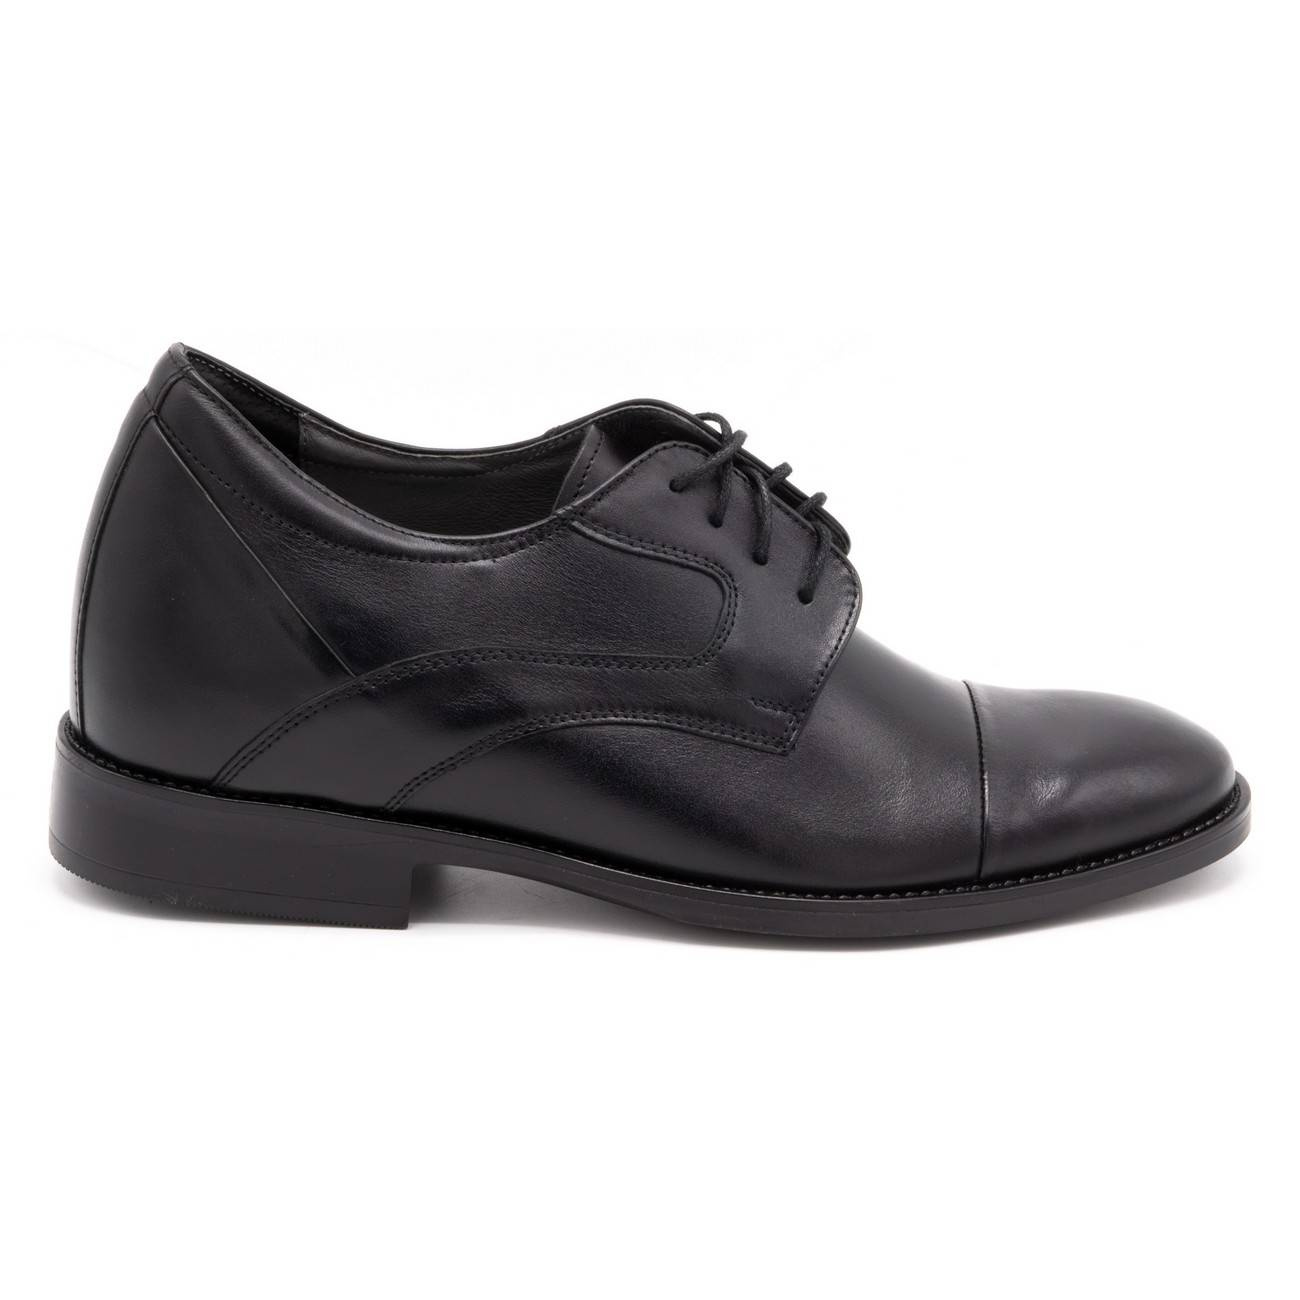 Buty męskie podwyższające casual P14 czarne - Buty Olivier